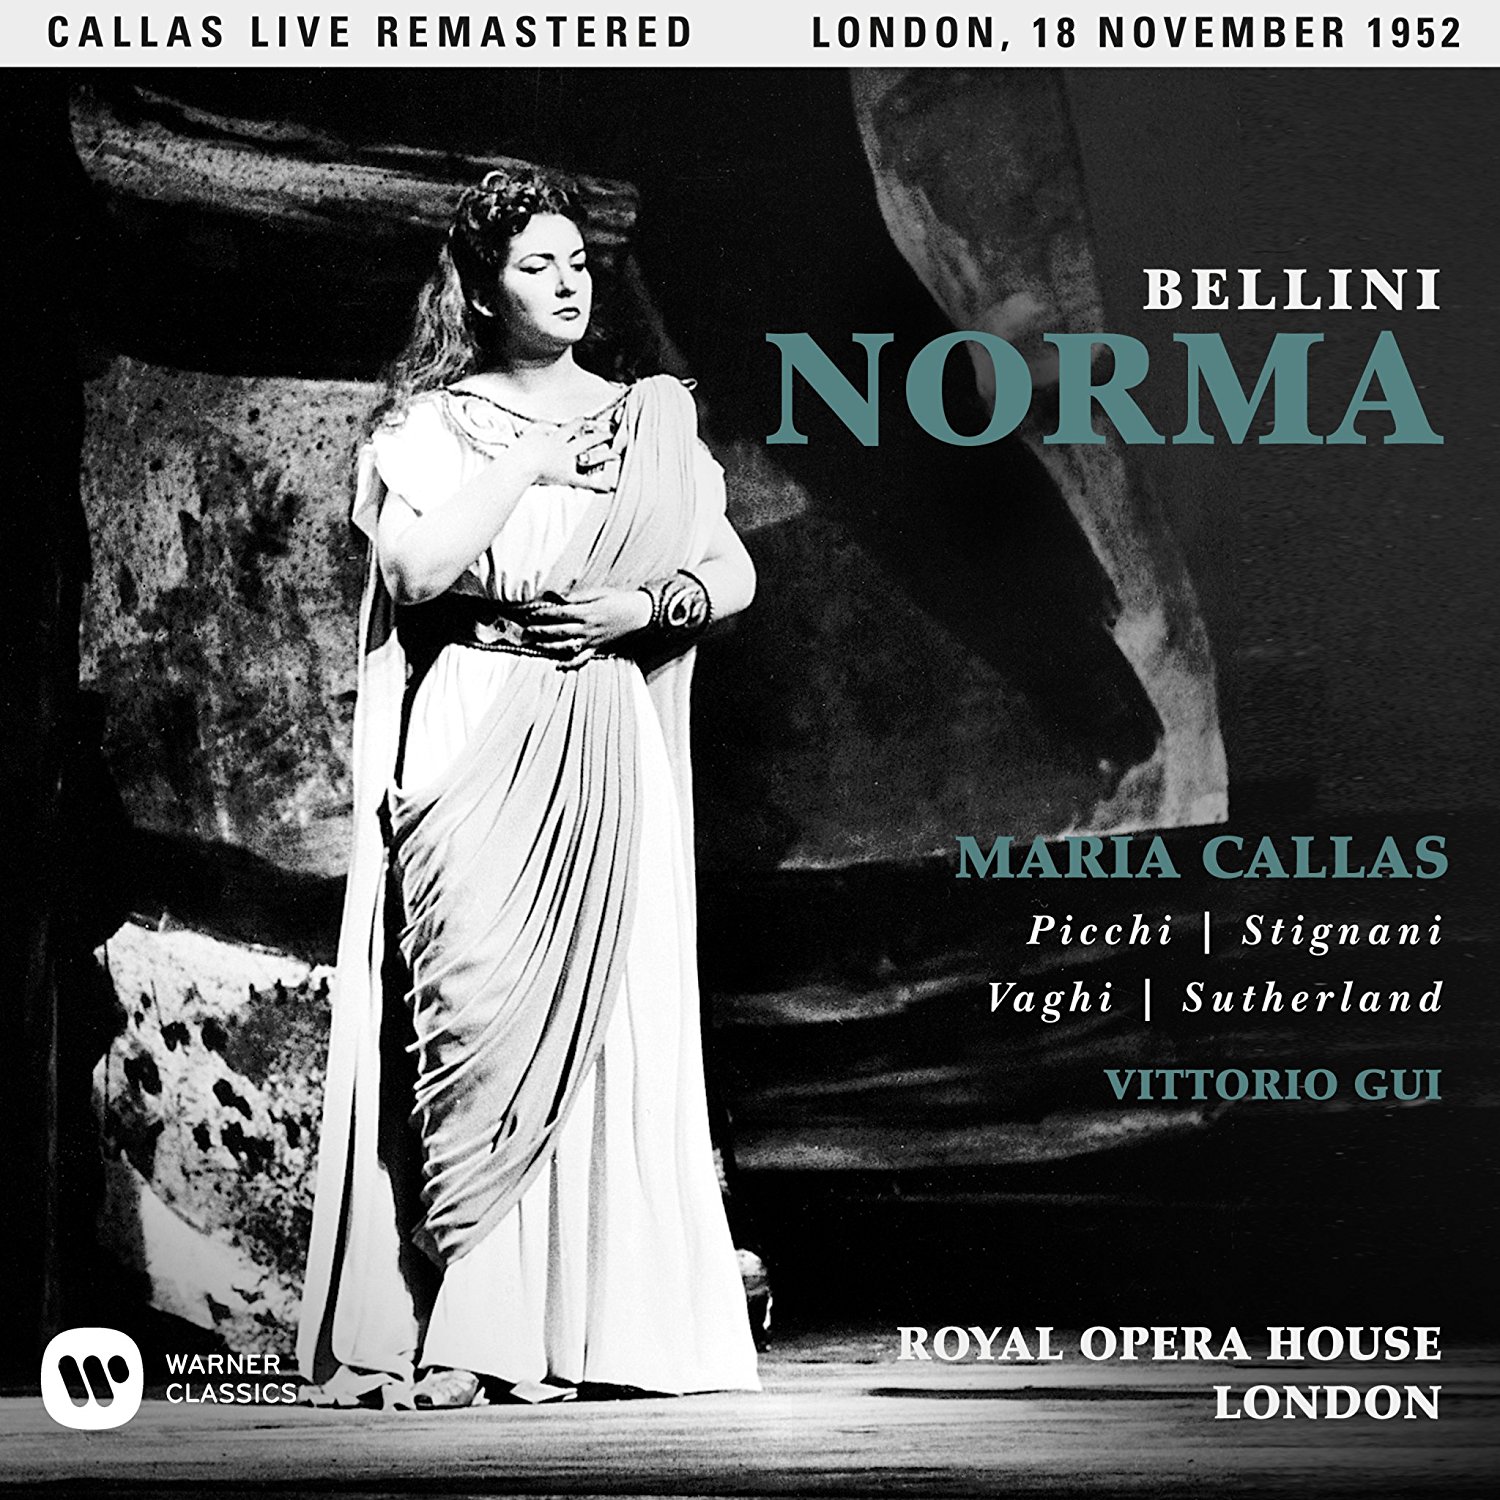 Bellini - Norma (1952 - London) - Callas Live Remastered | Maria Callas, Vittorio Gui image14